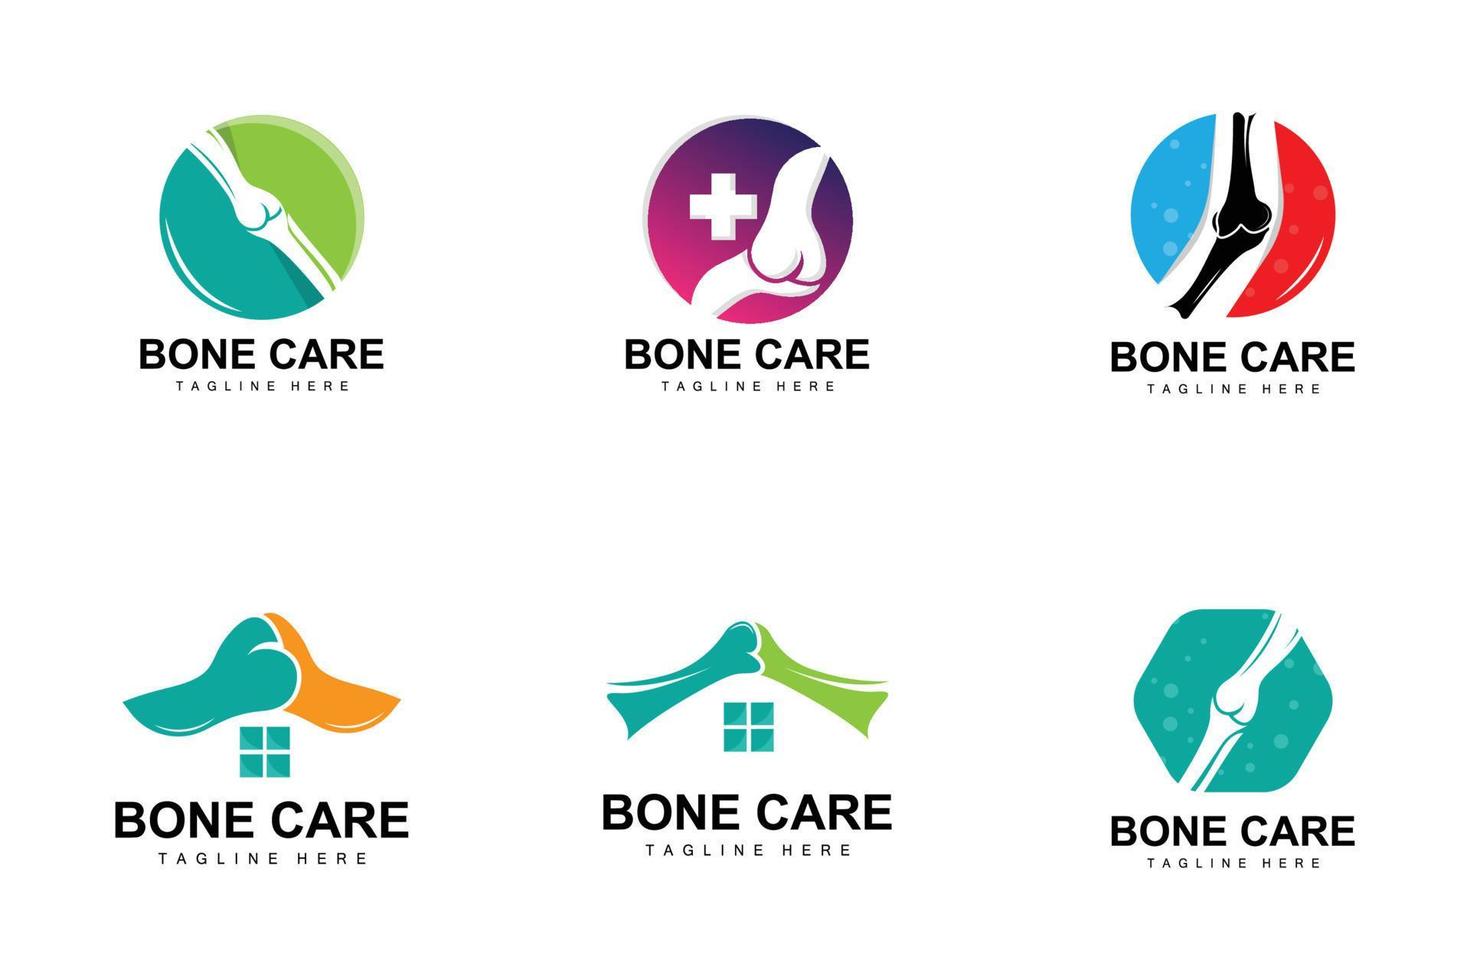 ben vård logotyp, kropp hälsa vektor, design för ben hälsa, apotek, sjukhus, hälsa produkt varumärke vektor